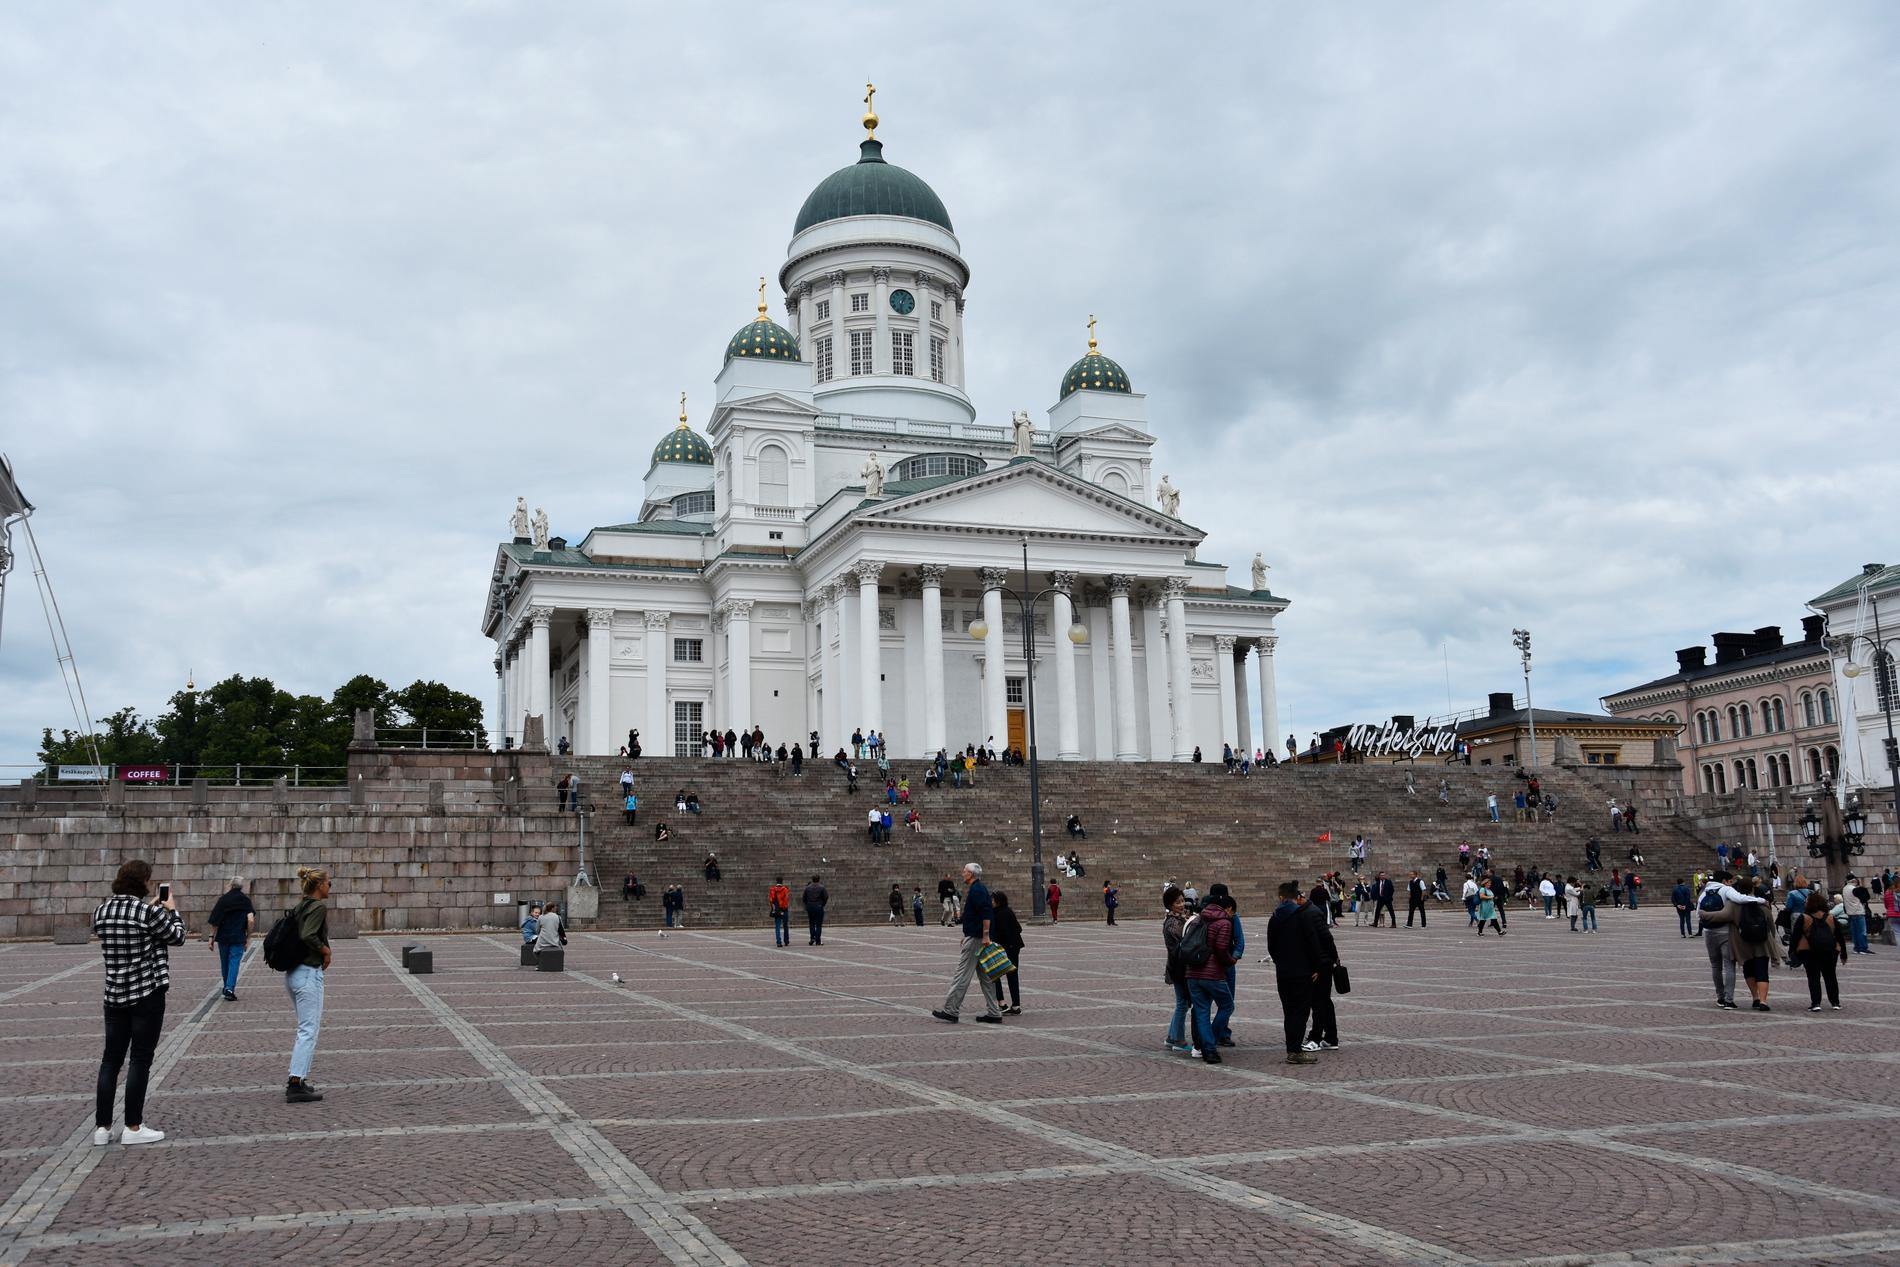 Domkyrkan i Helsingfors inväntar nästa veckas start på Finlands halvår som ordförandeland i EU.